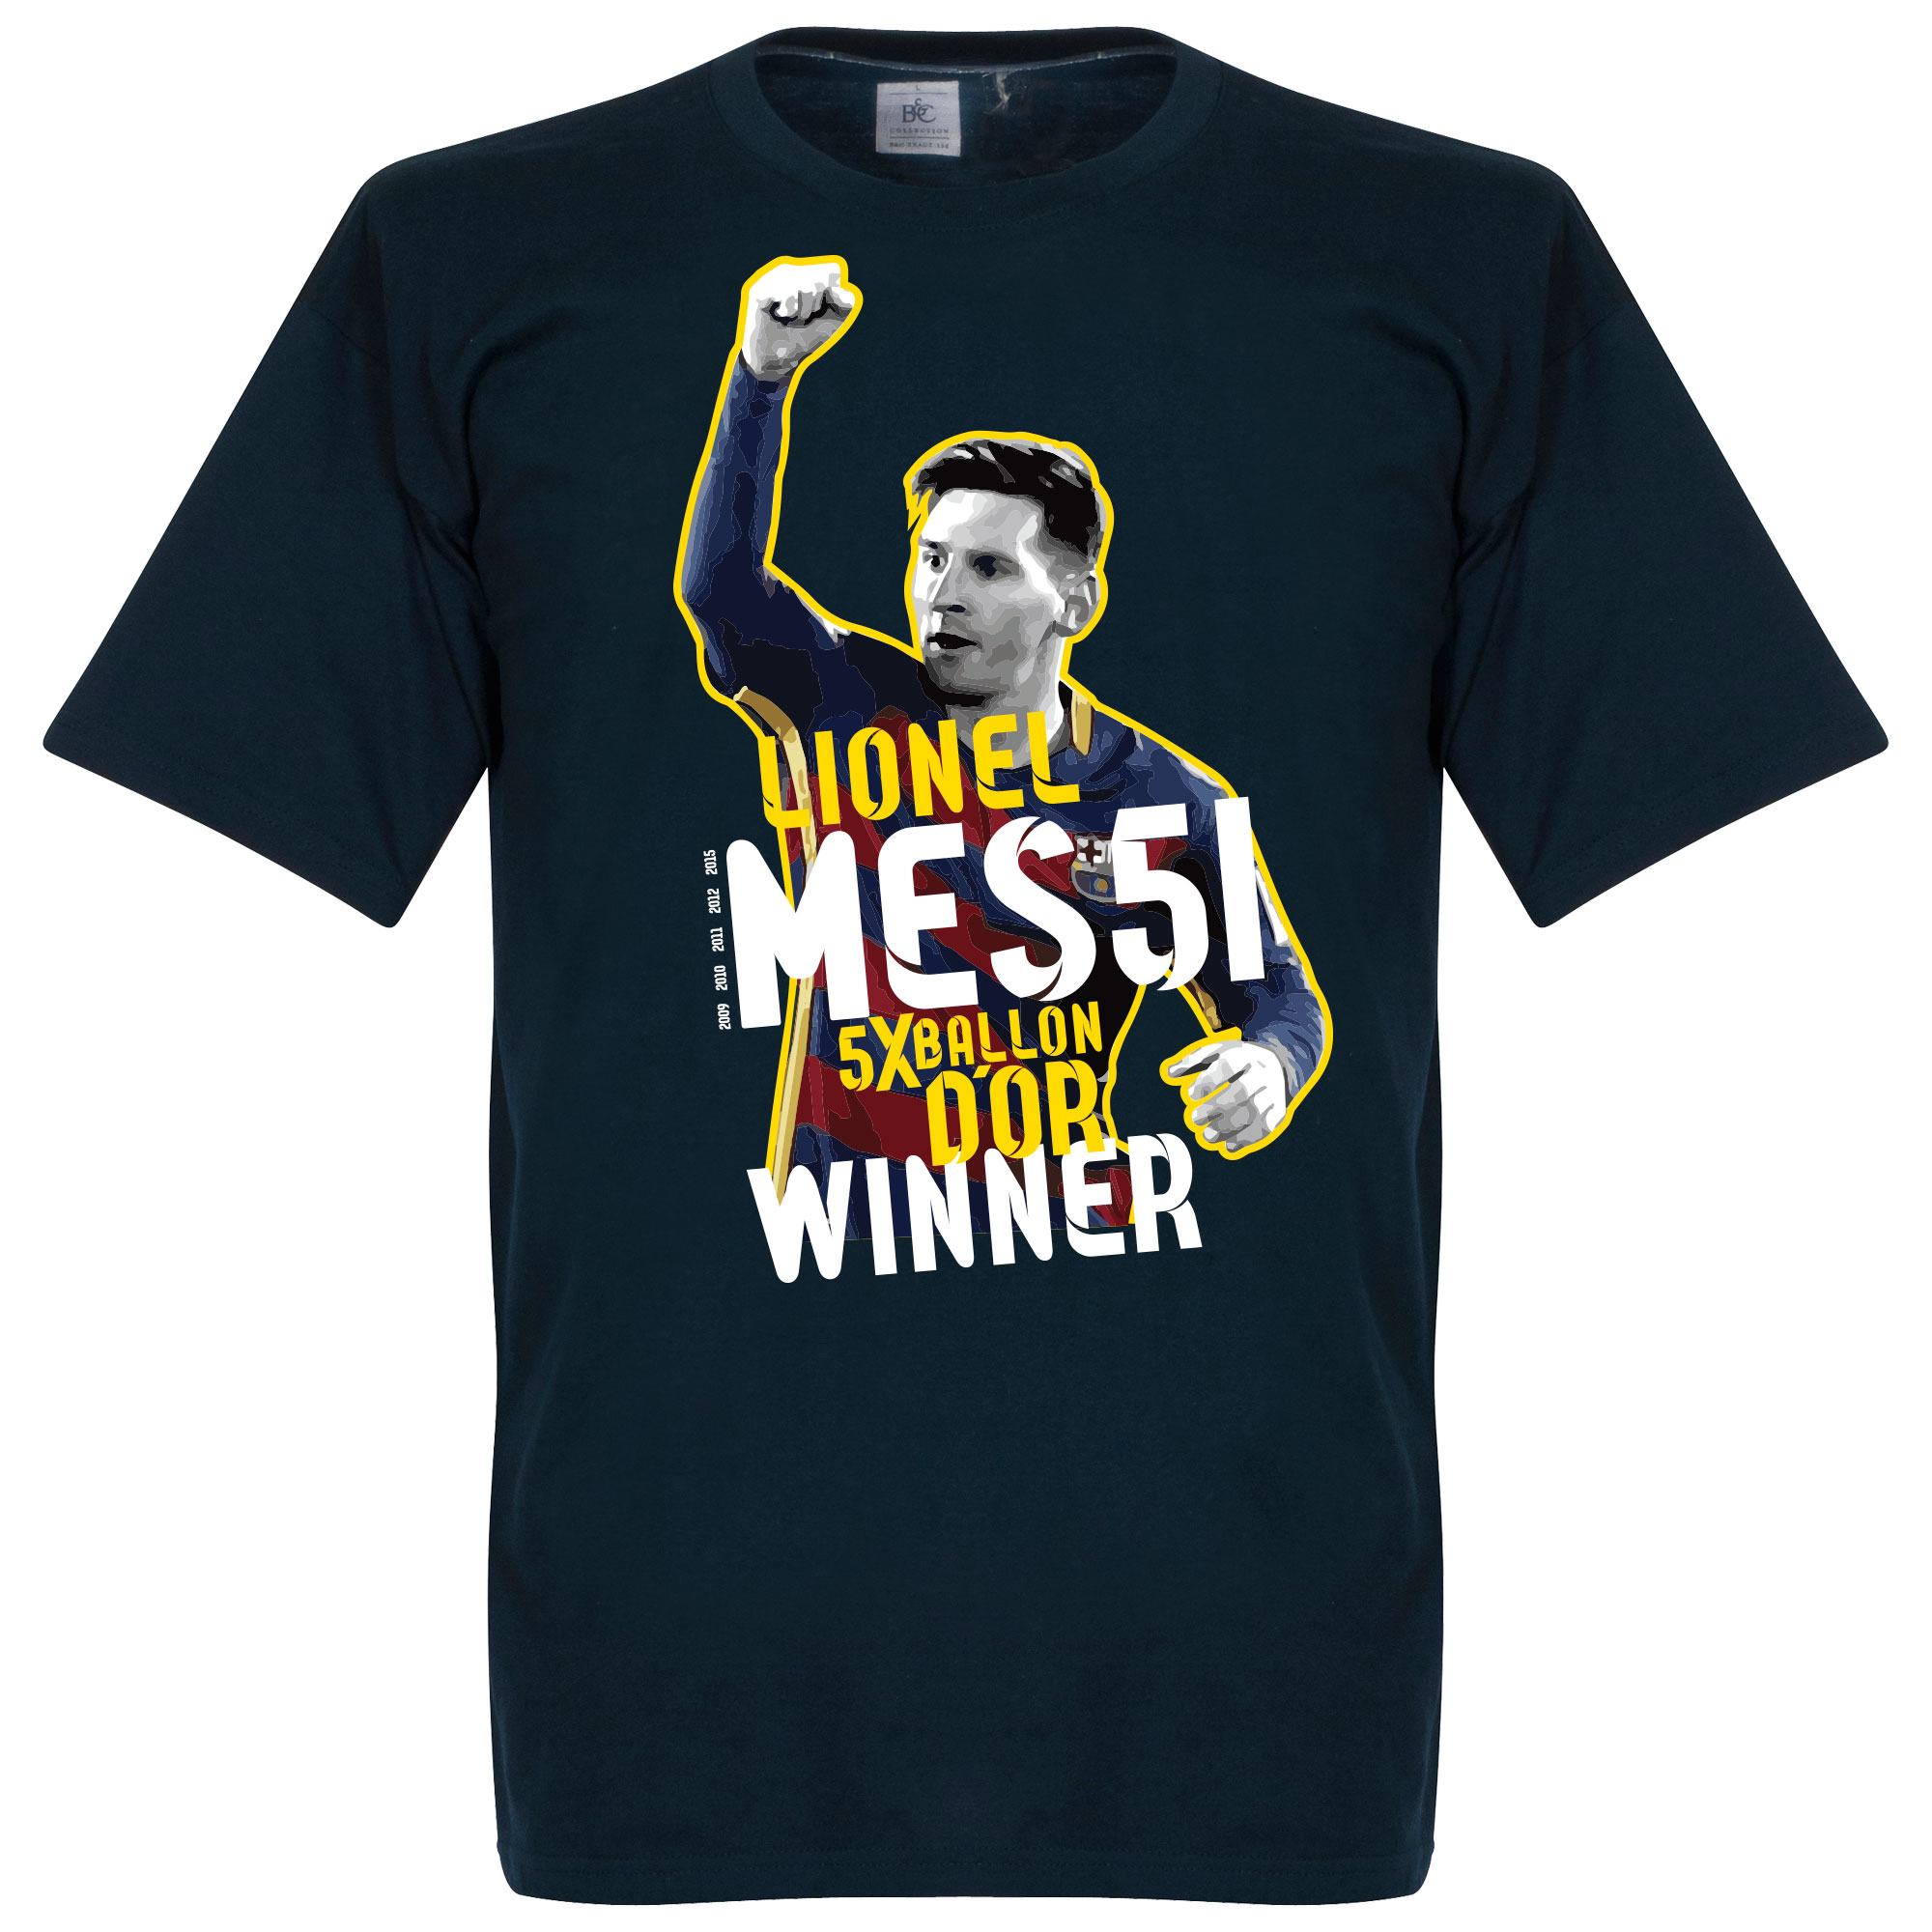 Messi 5 Times Ballon D'Or Winner T-Shirt S